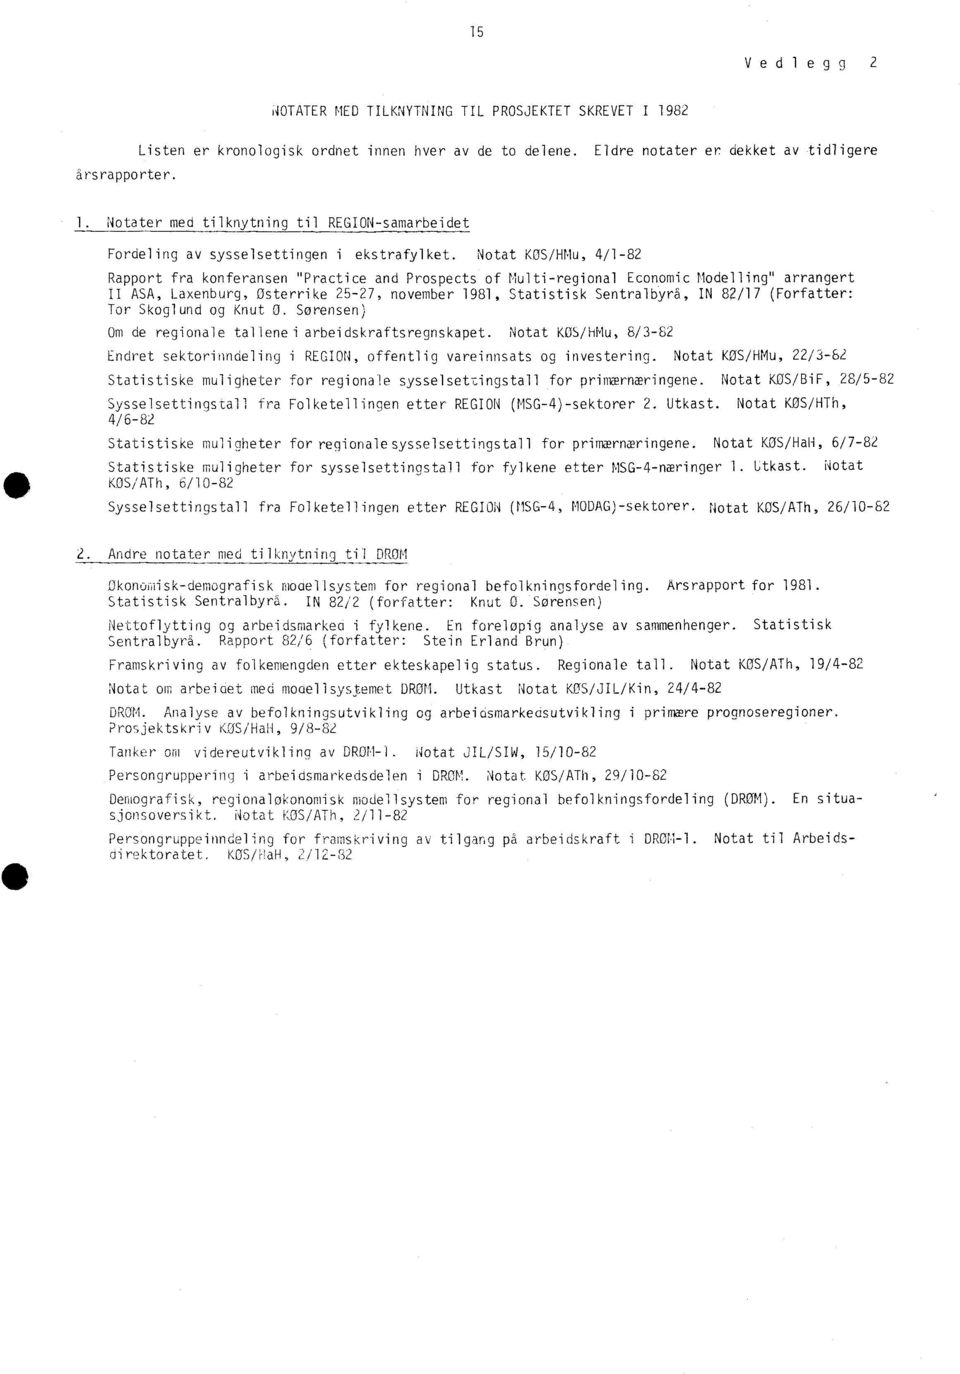 Notat KOS/HMu, 4/1-82 Rapport fra konferansen "Practice and Prospects of Multi-regional Economic Modelling" arrangert II ASA, Laxenburg, Osterrike 25-27, november 1981, Statistisk Sentralbyrå, IN